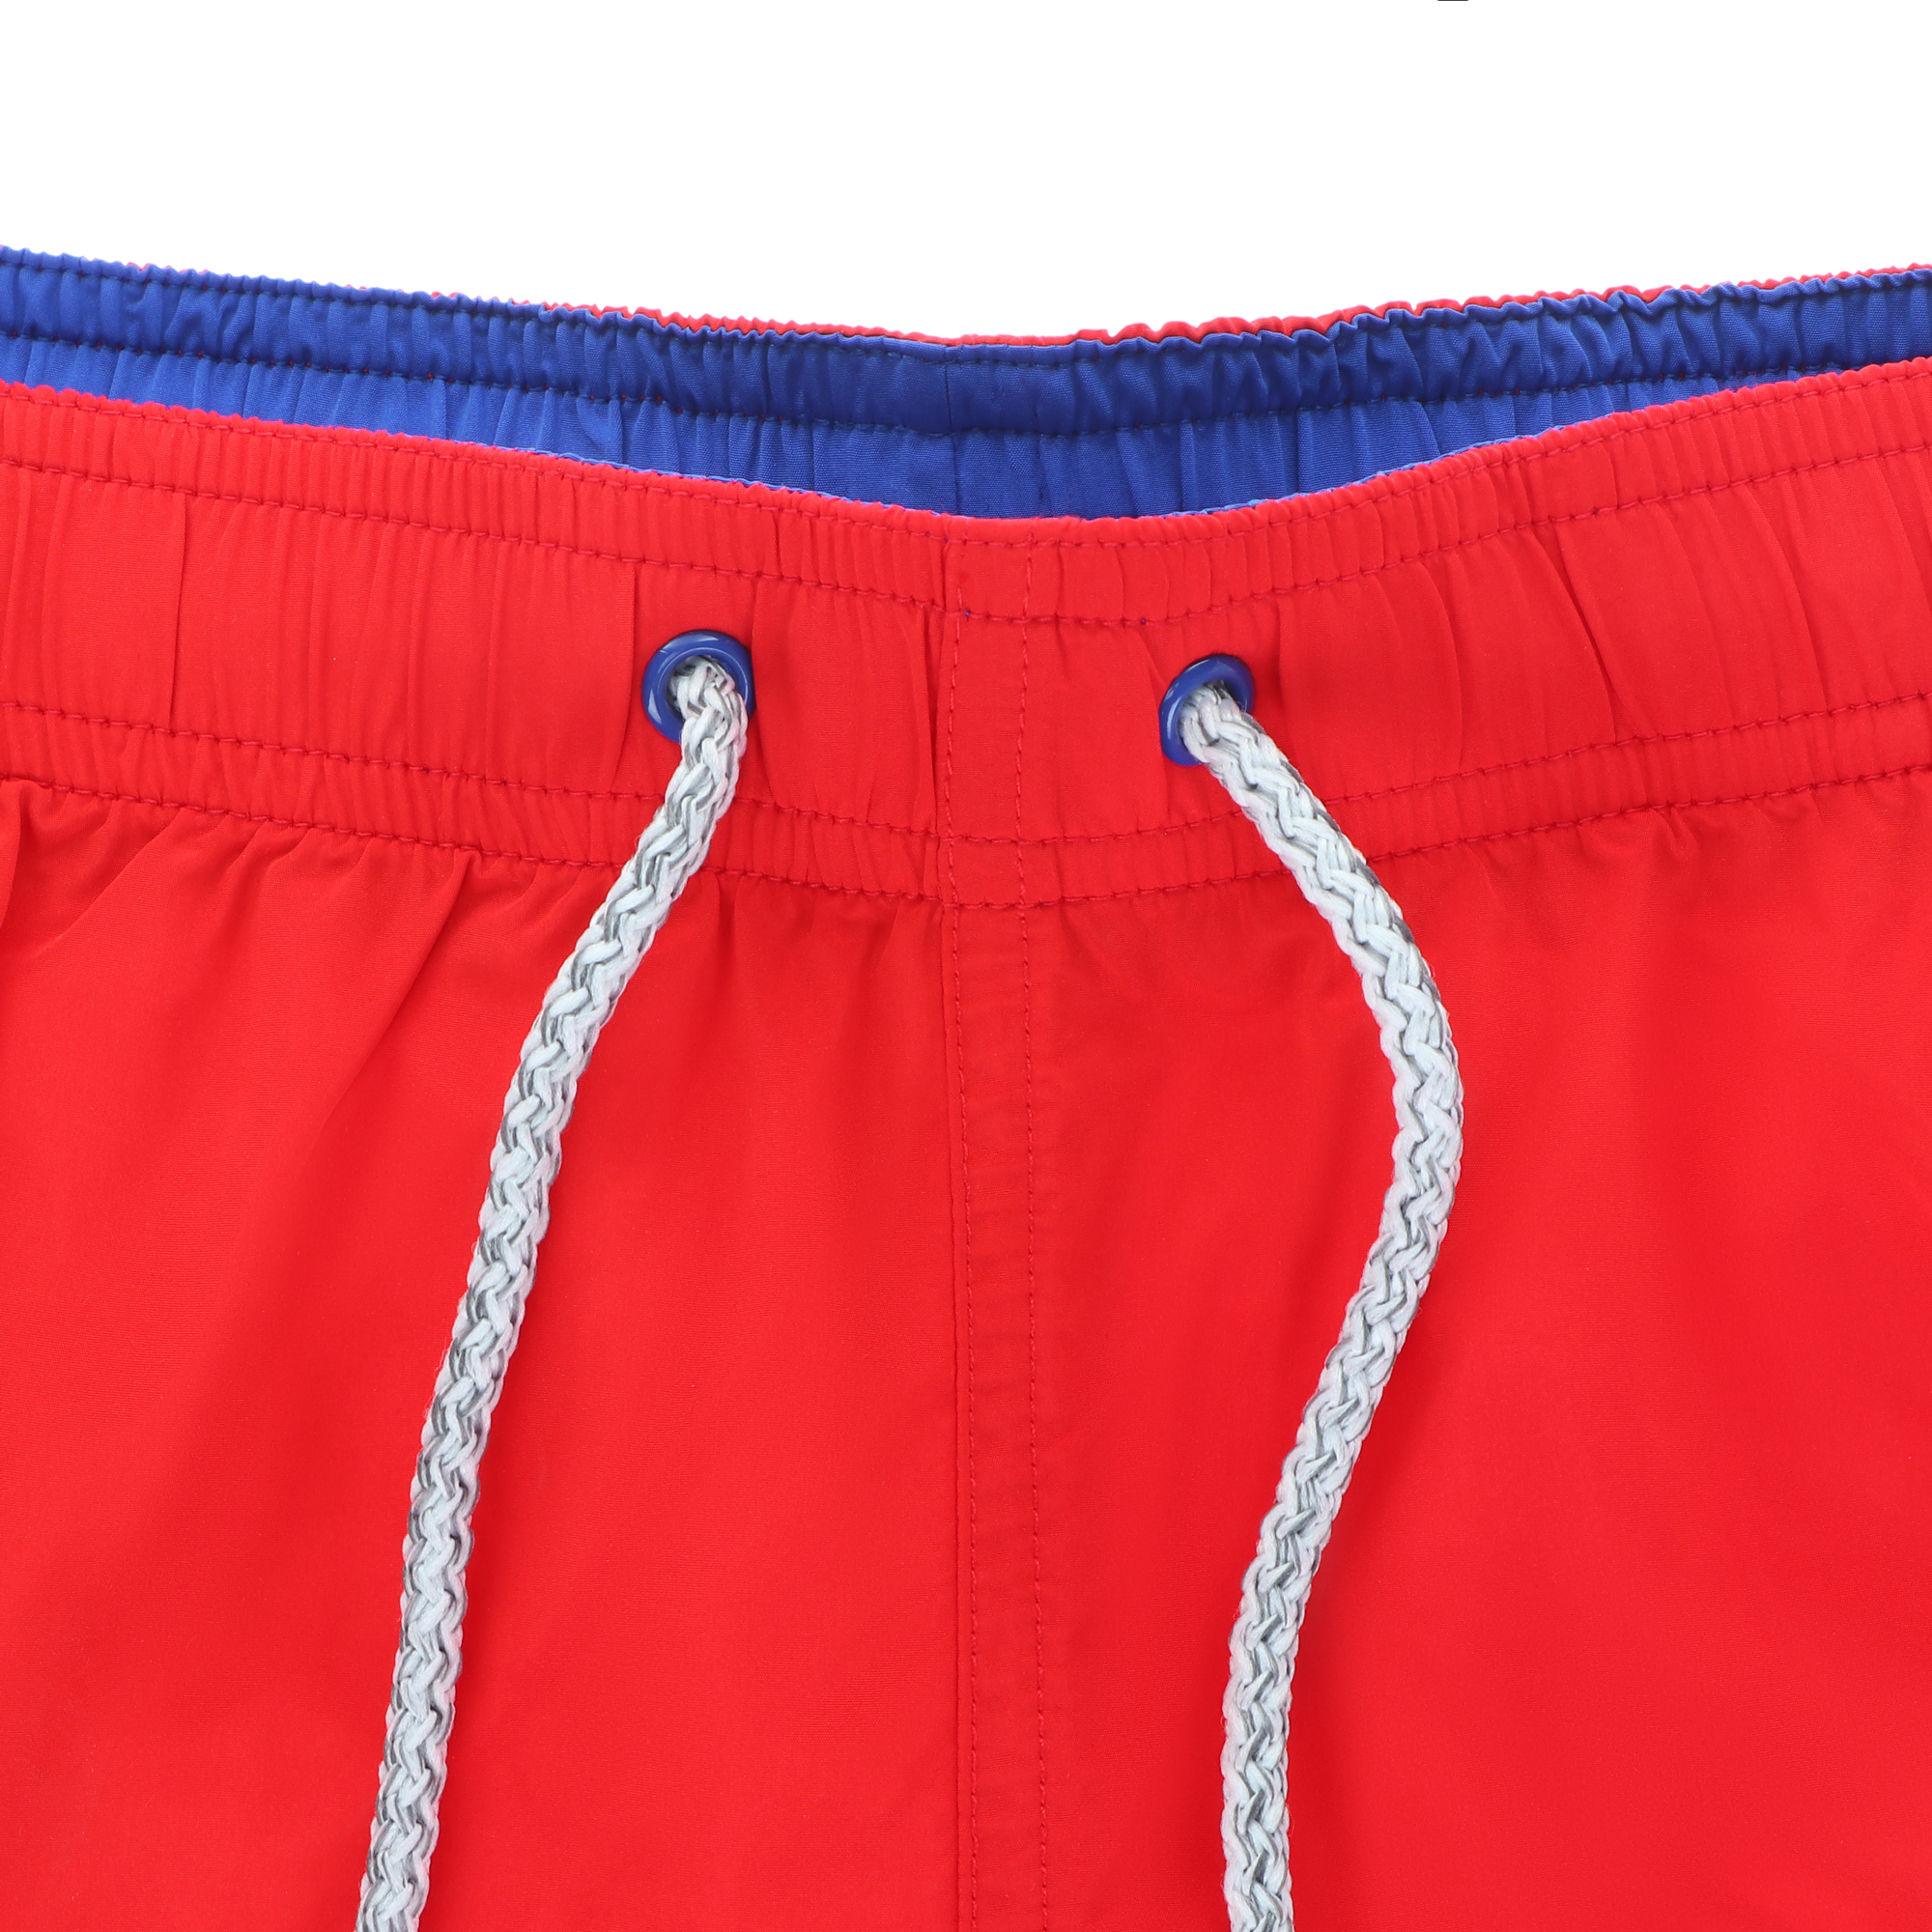 Мужские пляжные шорты Joyord красные, цвет красный, размер S - фото 3